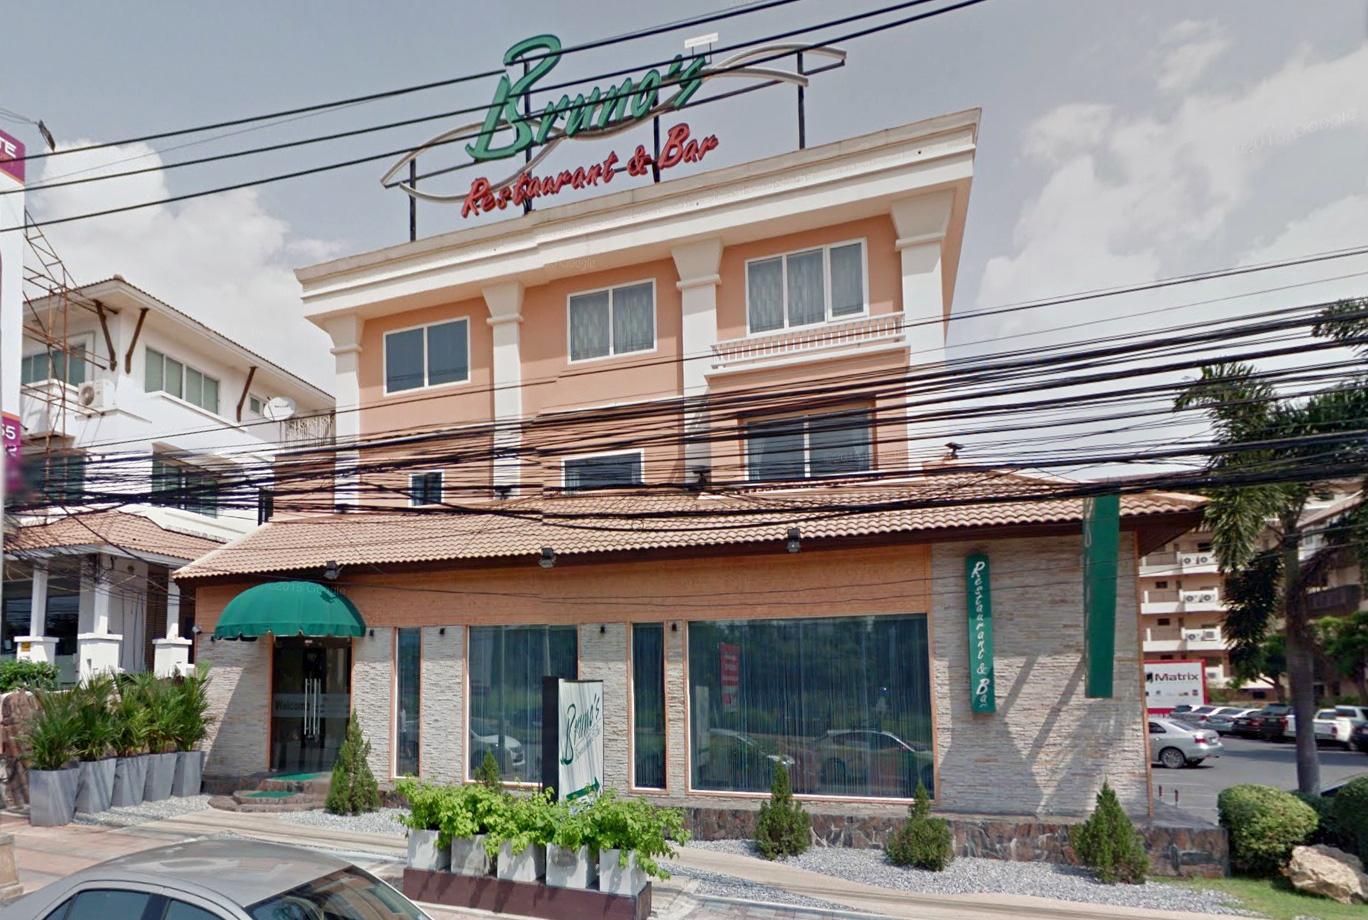 På gourmetrestaurangen ”Brunos restaurant and winebar” i Pattaya äter ett stort sällskap för drygt 4 000 kronor, vilket betalades med kyrkans kreditkort.